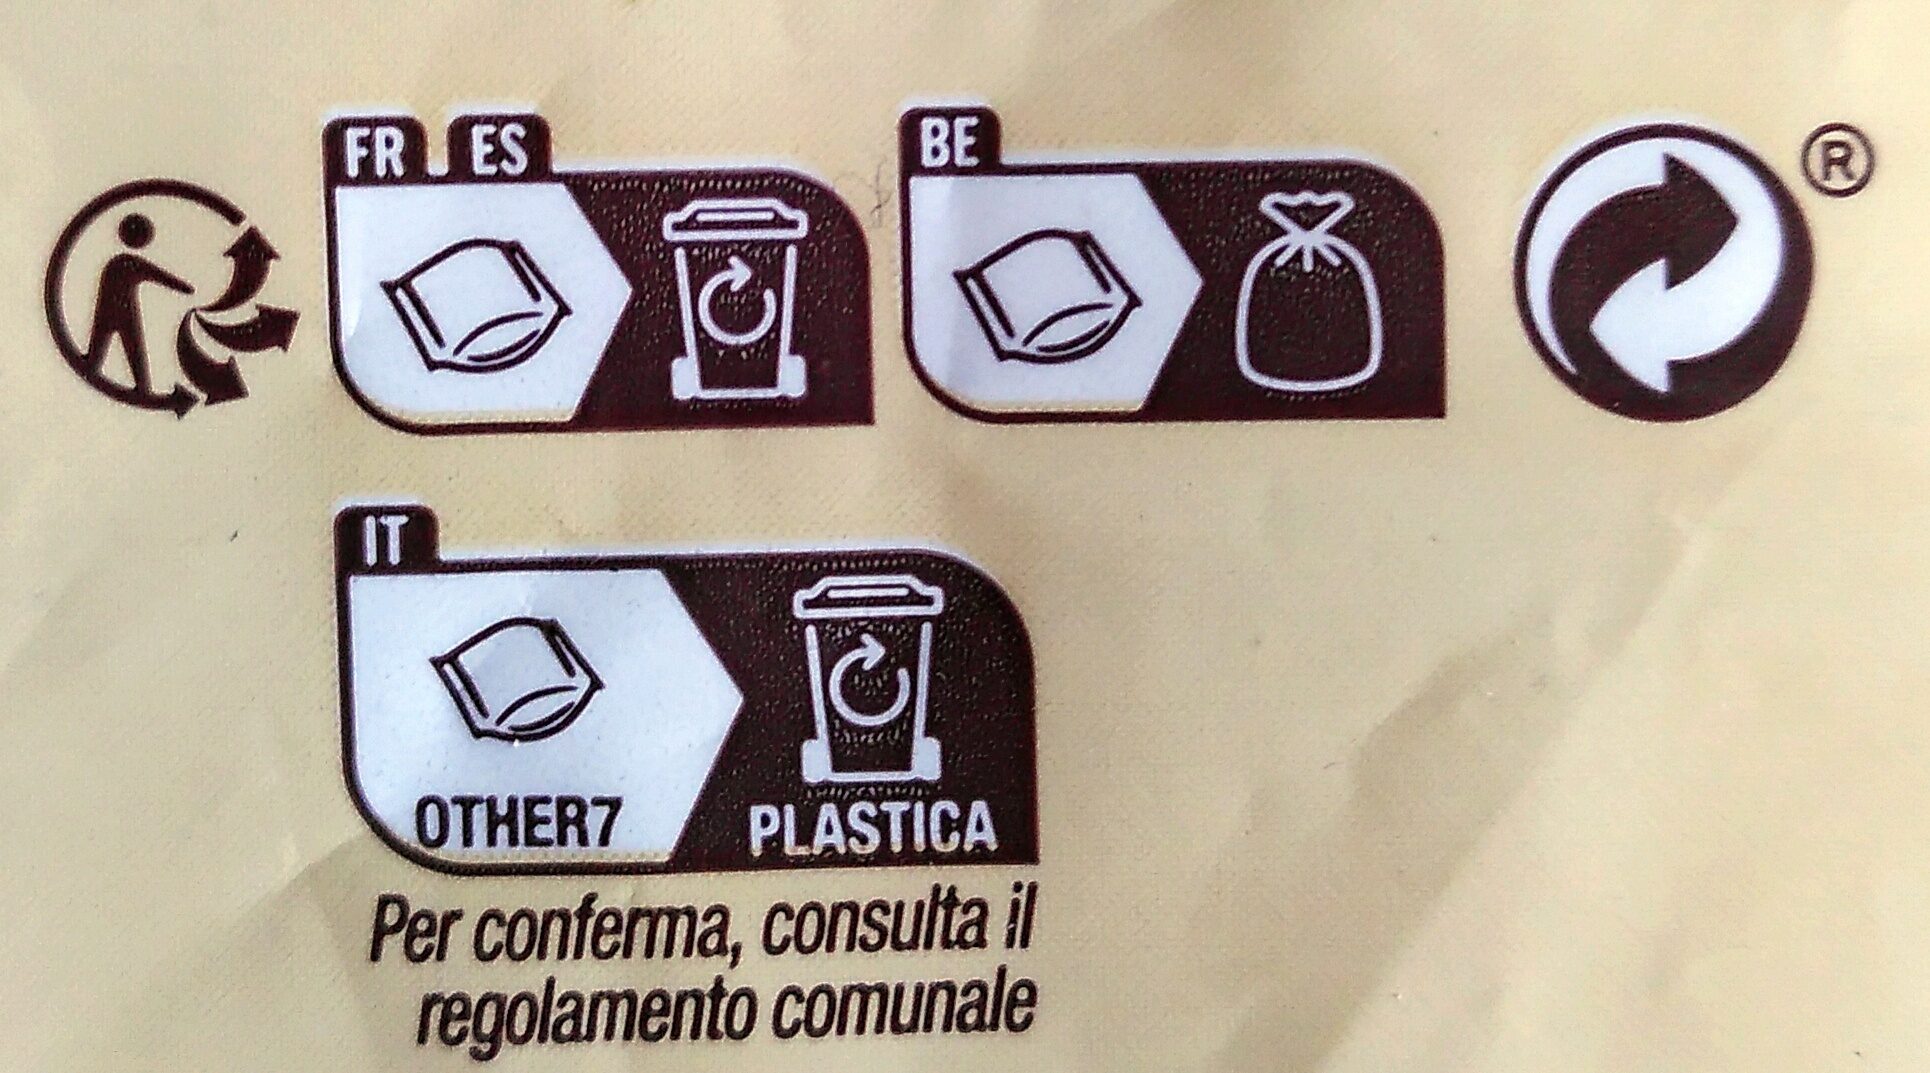 Gnocchi aux pommes de terre - Istruzioni per il riciclaggio e/o informazioni sull'imballaggio - fr